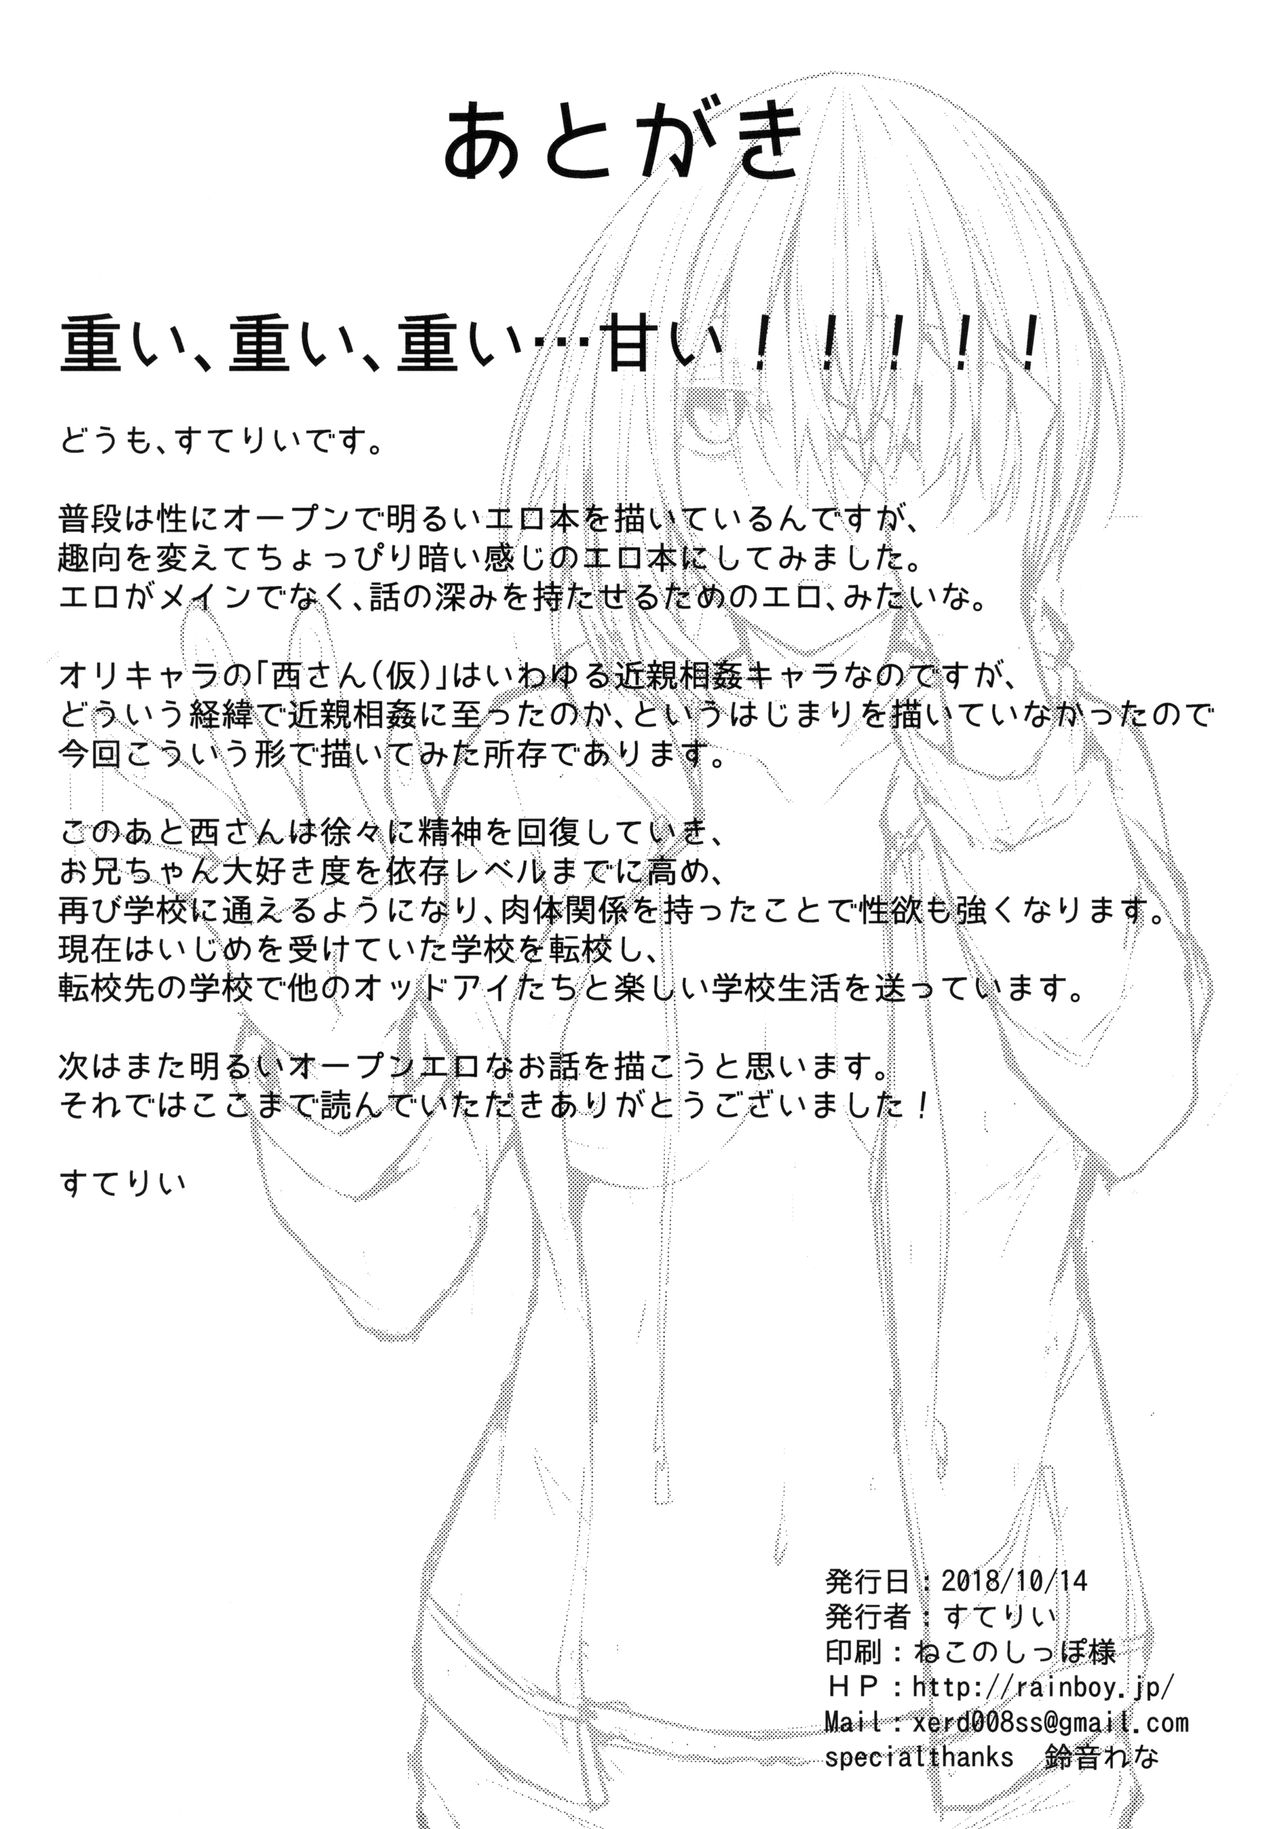 (COMIC1☆14) [RainBoy (すてりい)] PROVISIONAL NAME ZERO